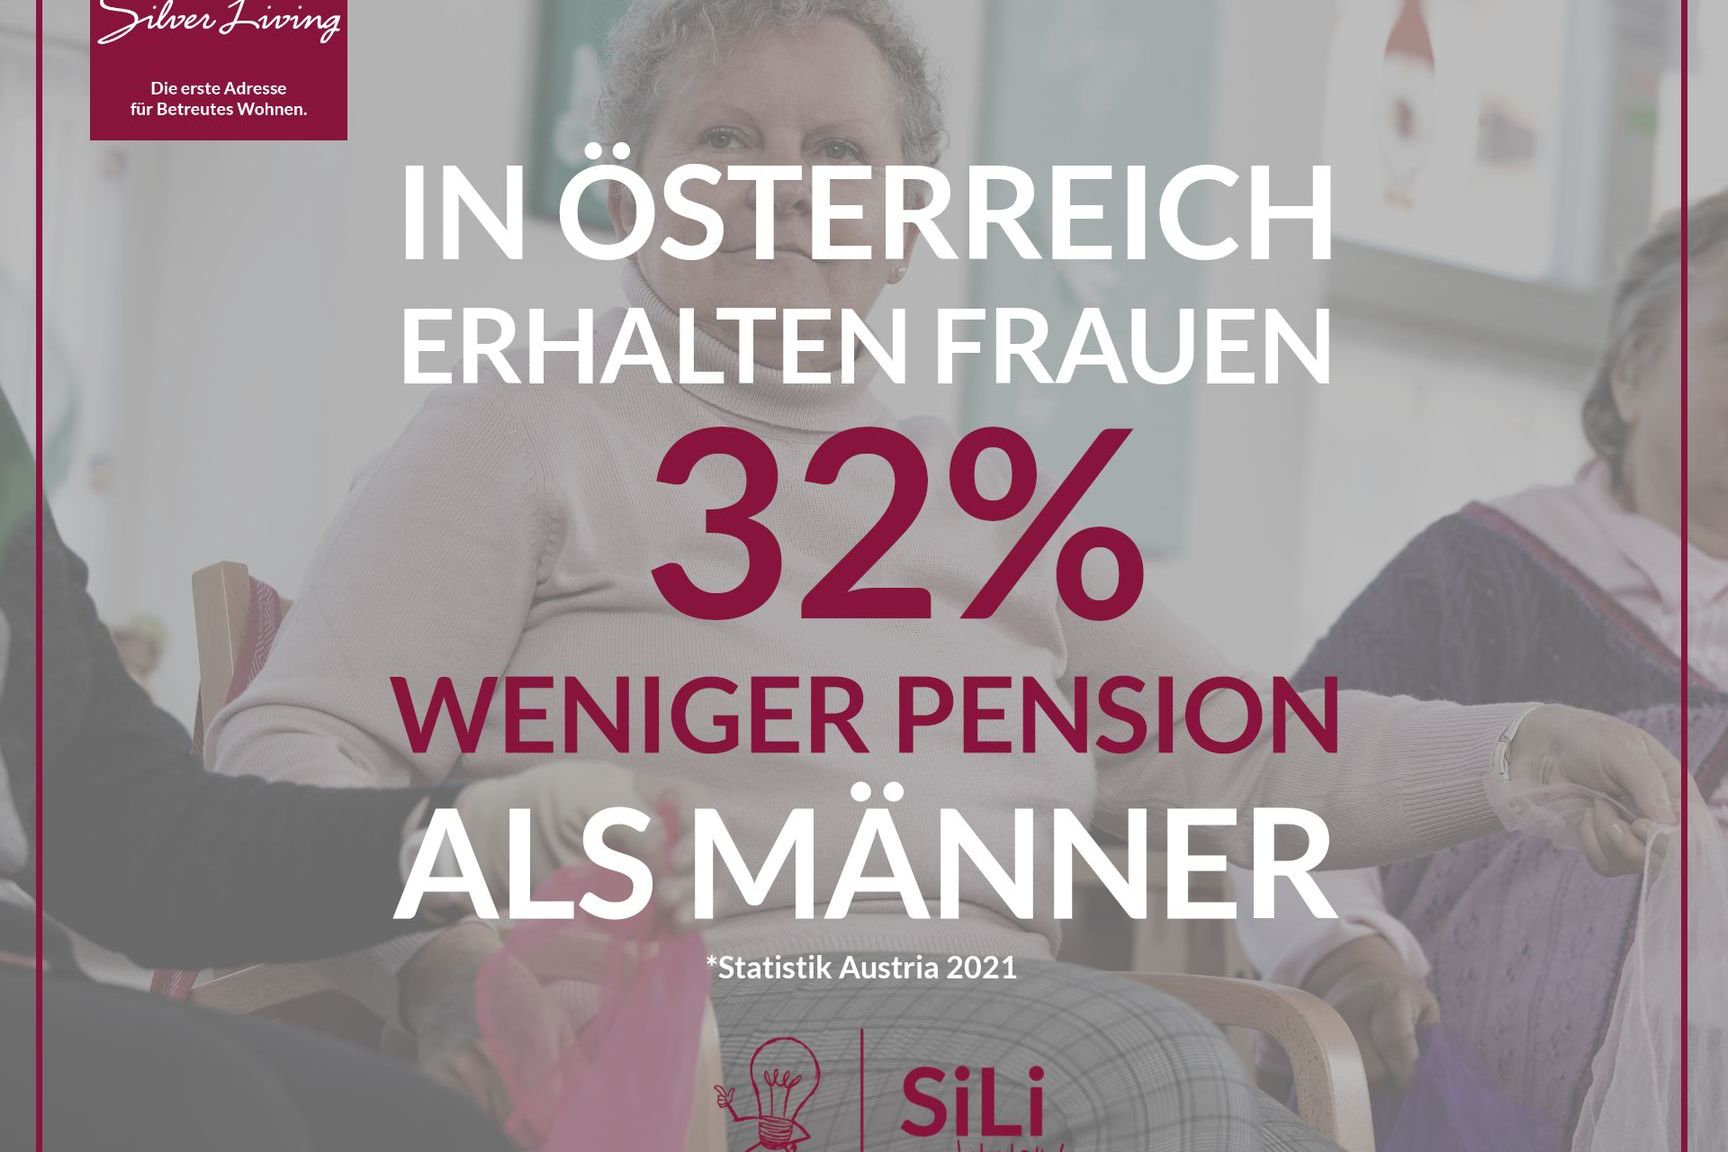 In Österreich erhalten Frauen 32% weniger Pension als Männer.